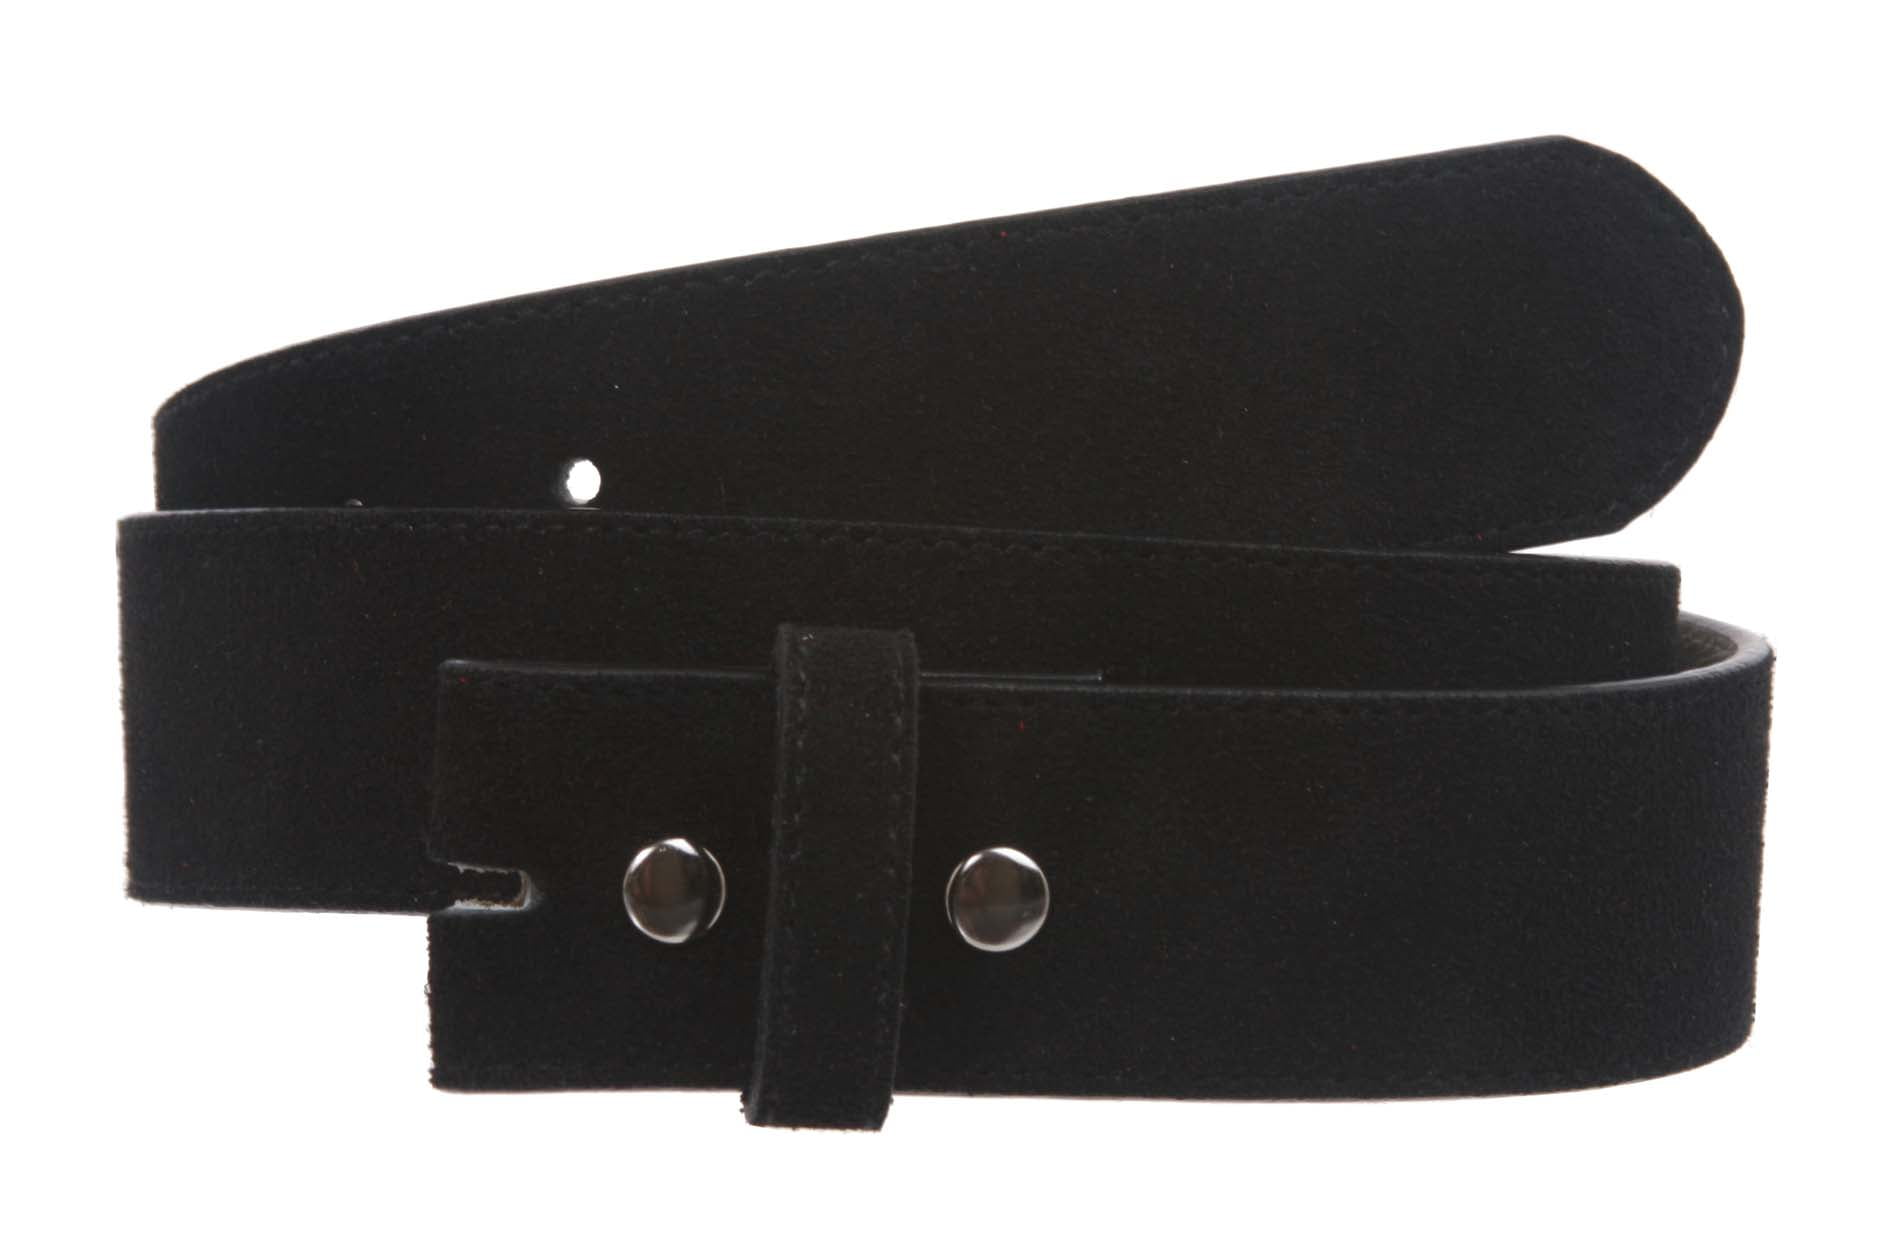 Genuine Full Leather Belt Strap 1-1/2" wide UNISEX Belt Snap on Multi Color 